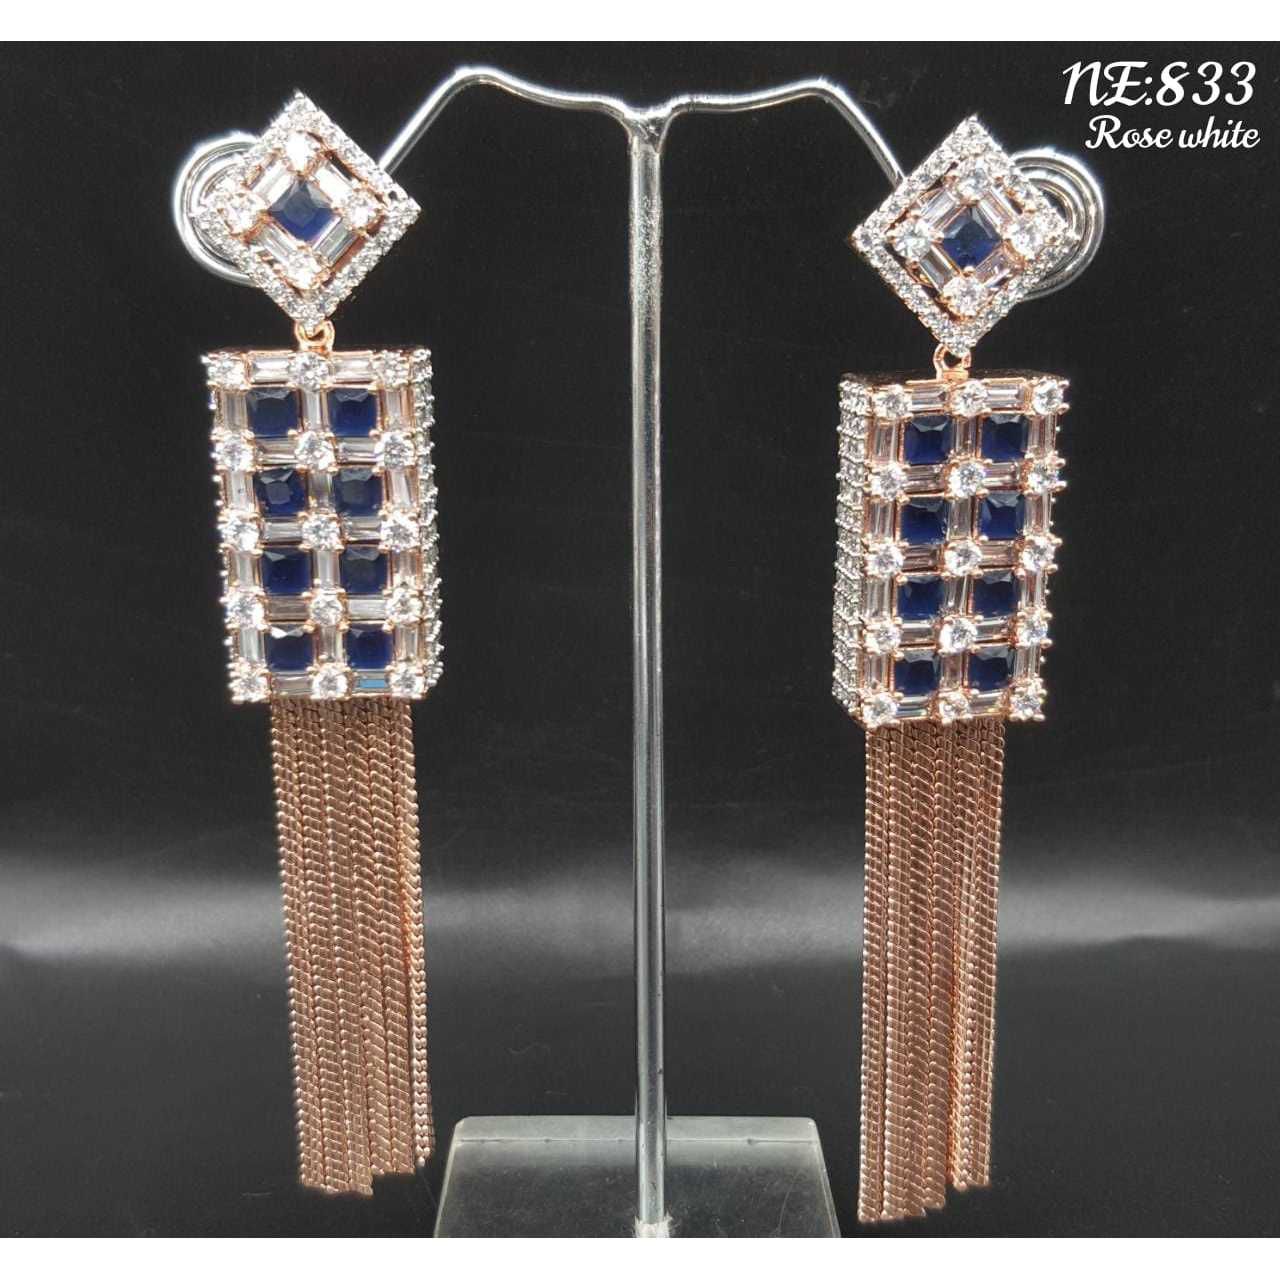 Beautiful diamond earrings#1046